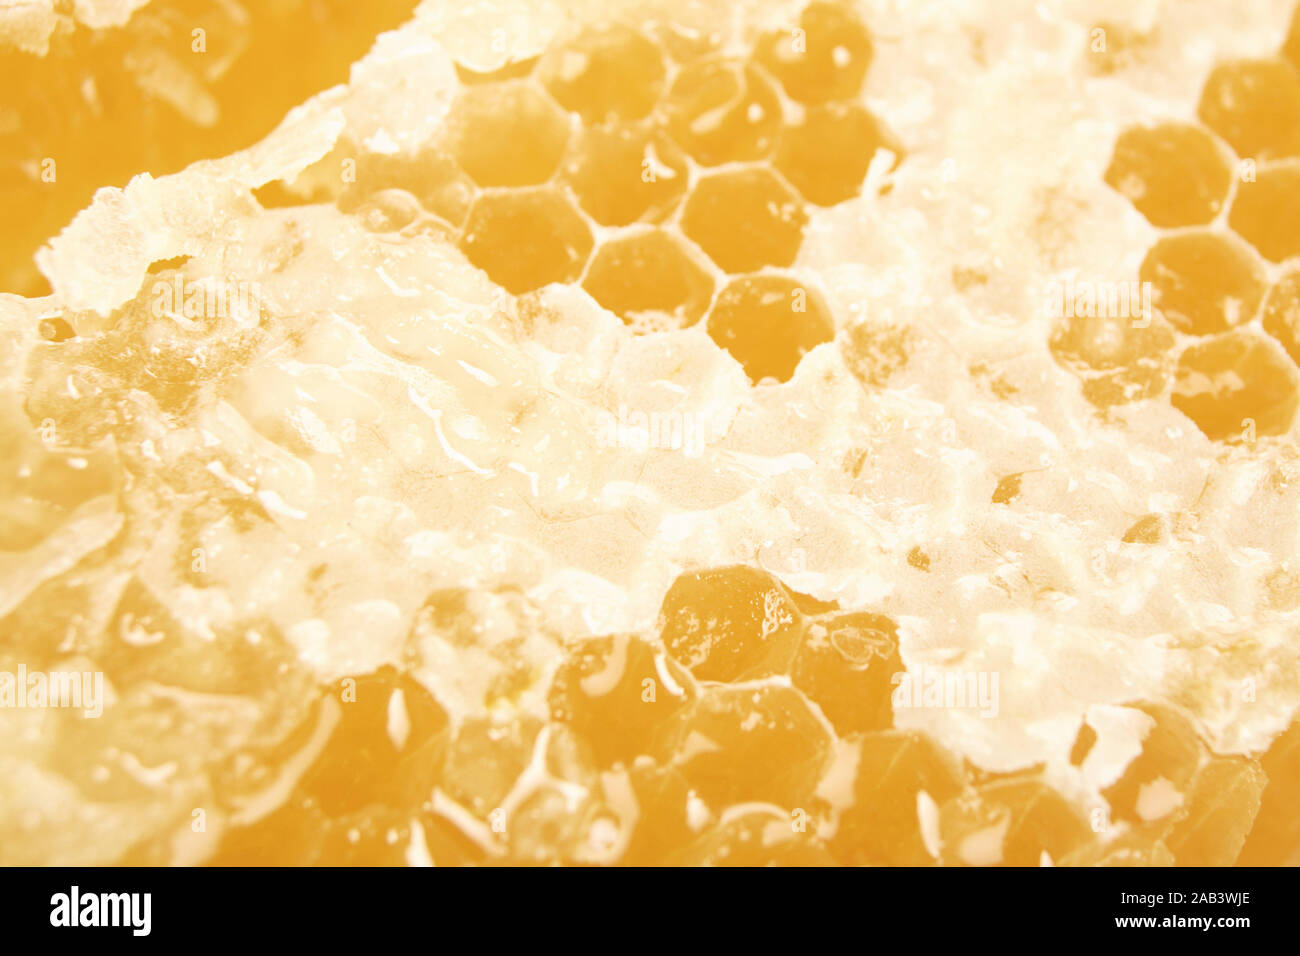 Nahaufnahme einer Honigwabe |Close-up of a honeycomb| Stock Photo